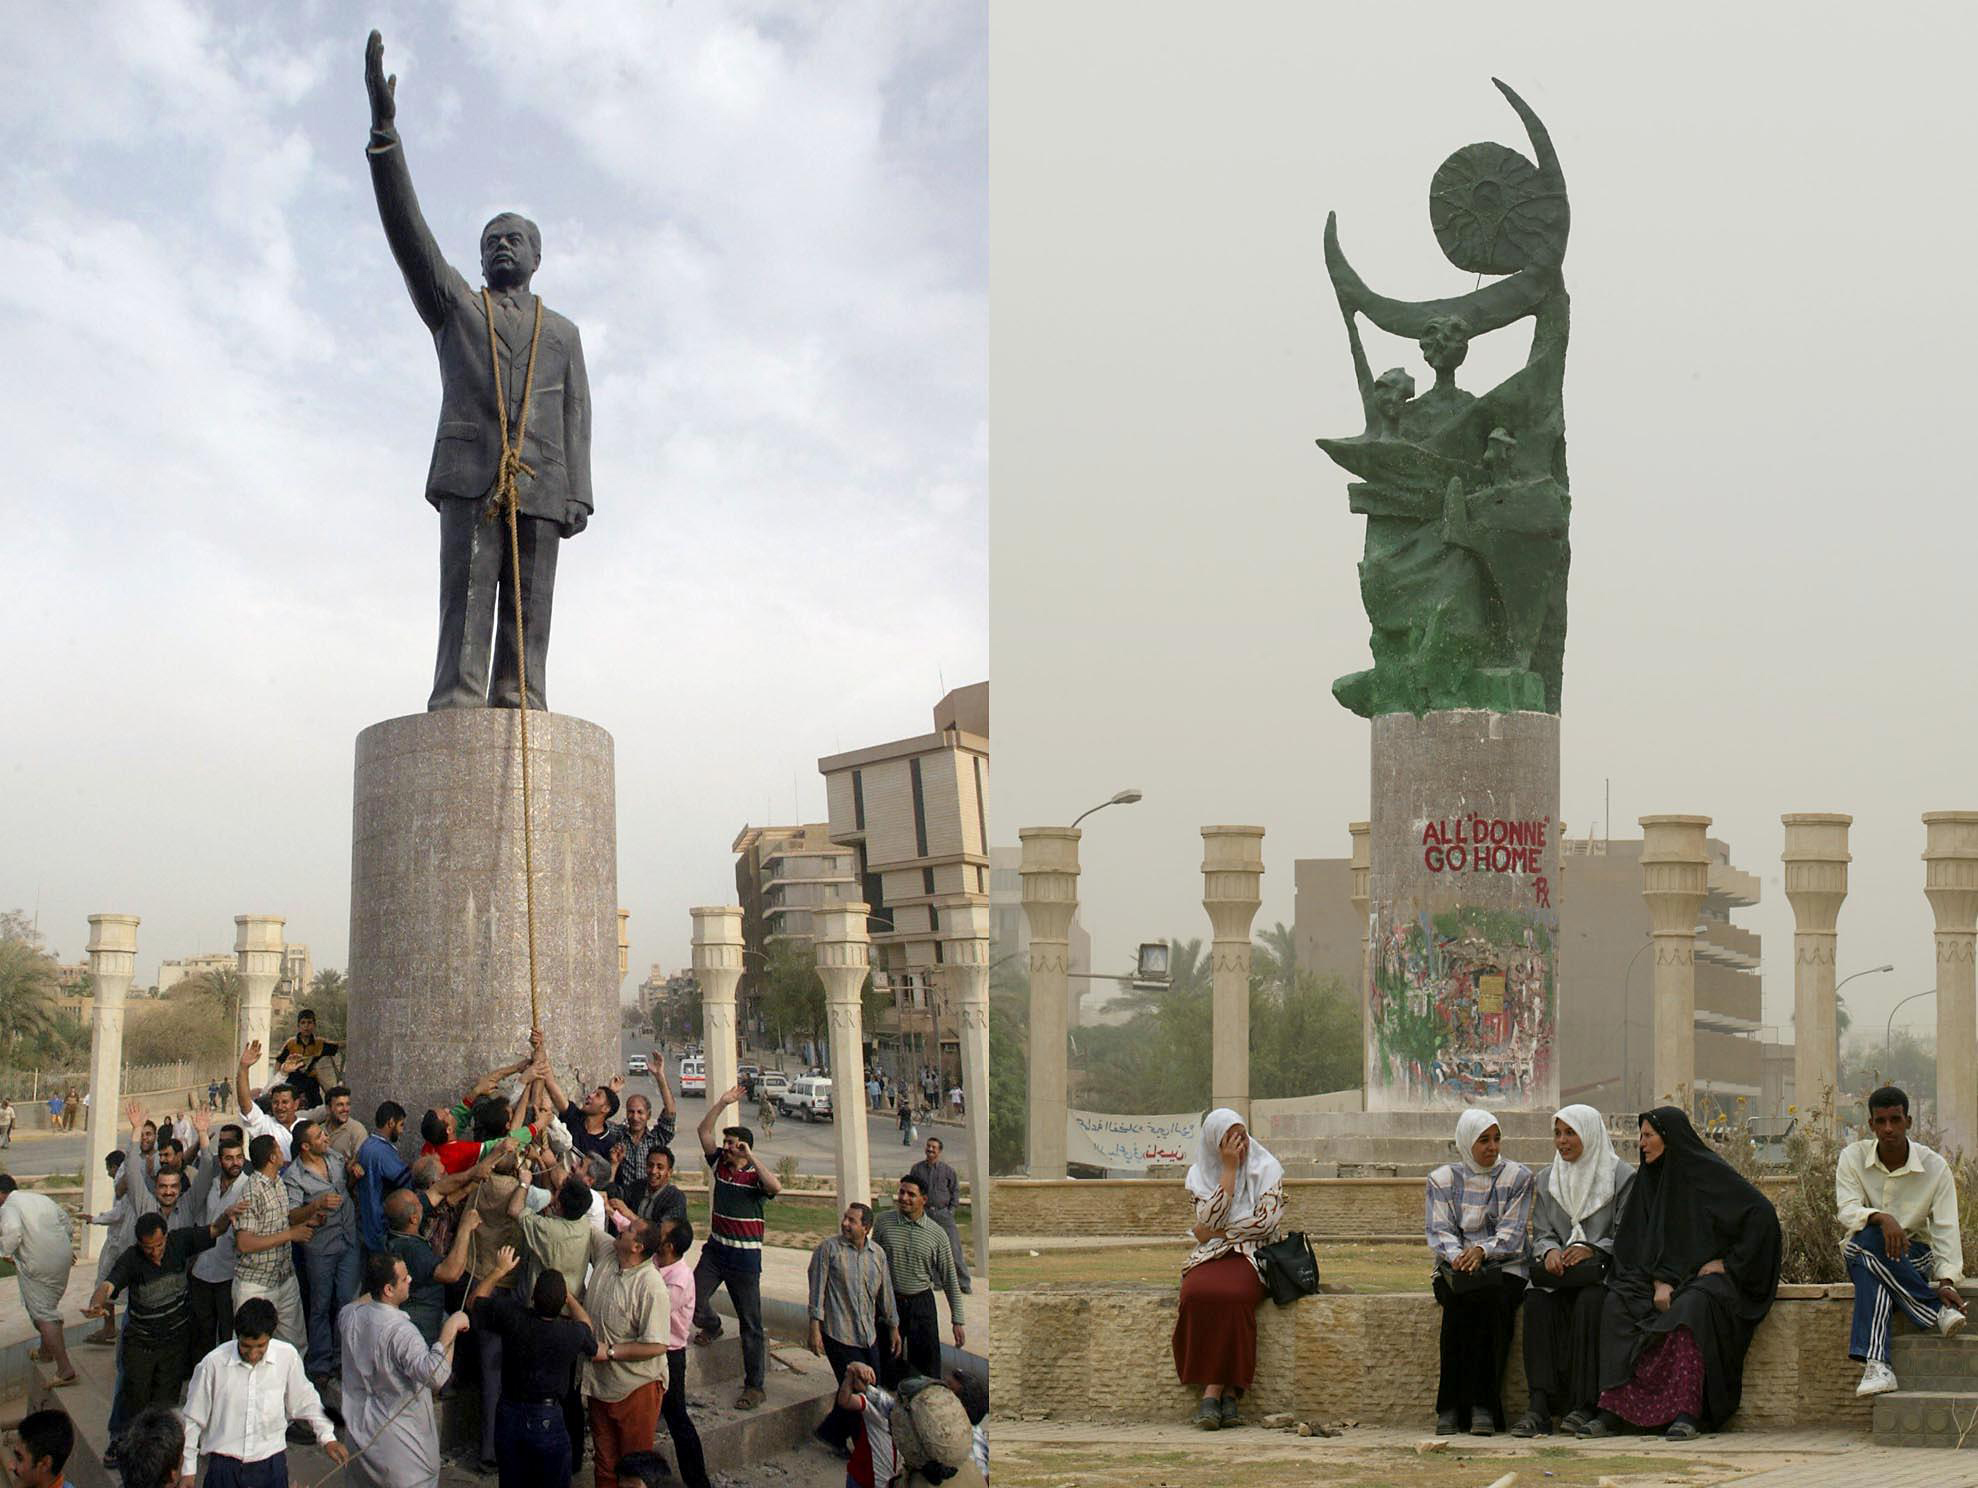 15 عاما على سقوط بغداد القوات الأمريكية والبريطانية تستهدف العاصمة العراقية بـ1000 طلعة جوية سميت بـ الصدمة والرعب وأول معركة ضد الحرس الجمهورى تقع نهاية مارس 2003 والمارينز أسقطوا تمثال صدام حسين